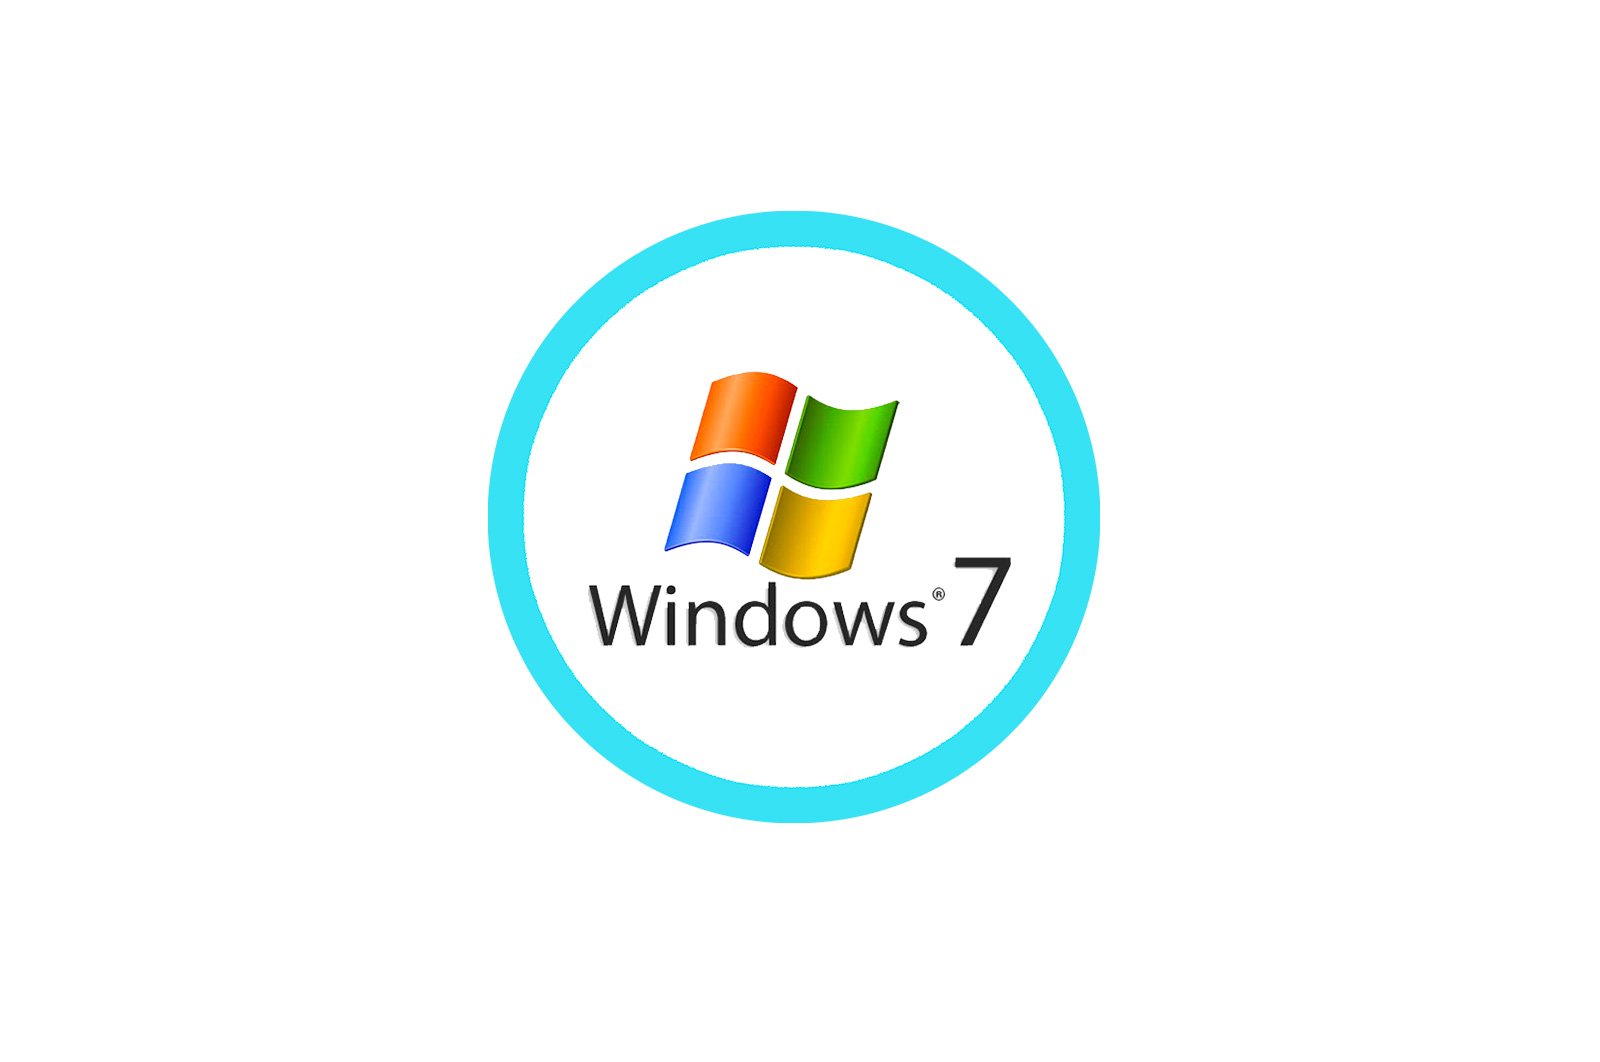 windows 7 da tarmoq sozlamalarini tiklang haqida malumot 65ccf13ab4c4d